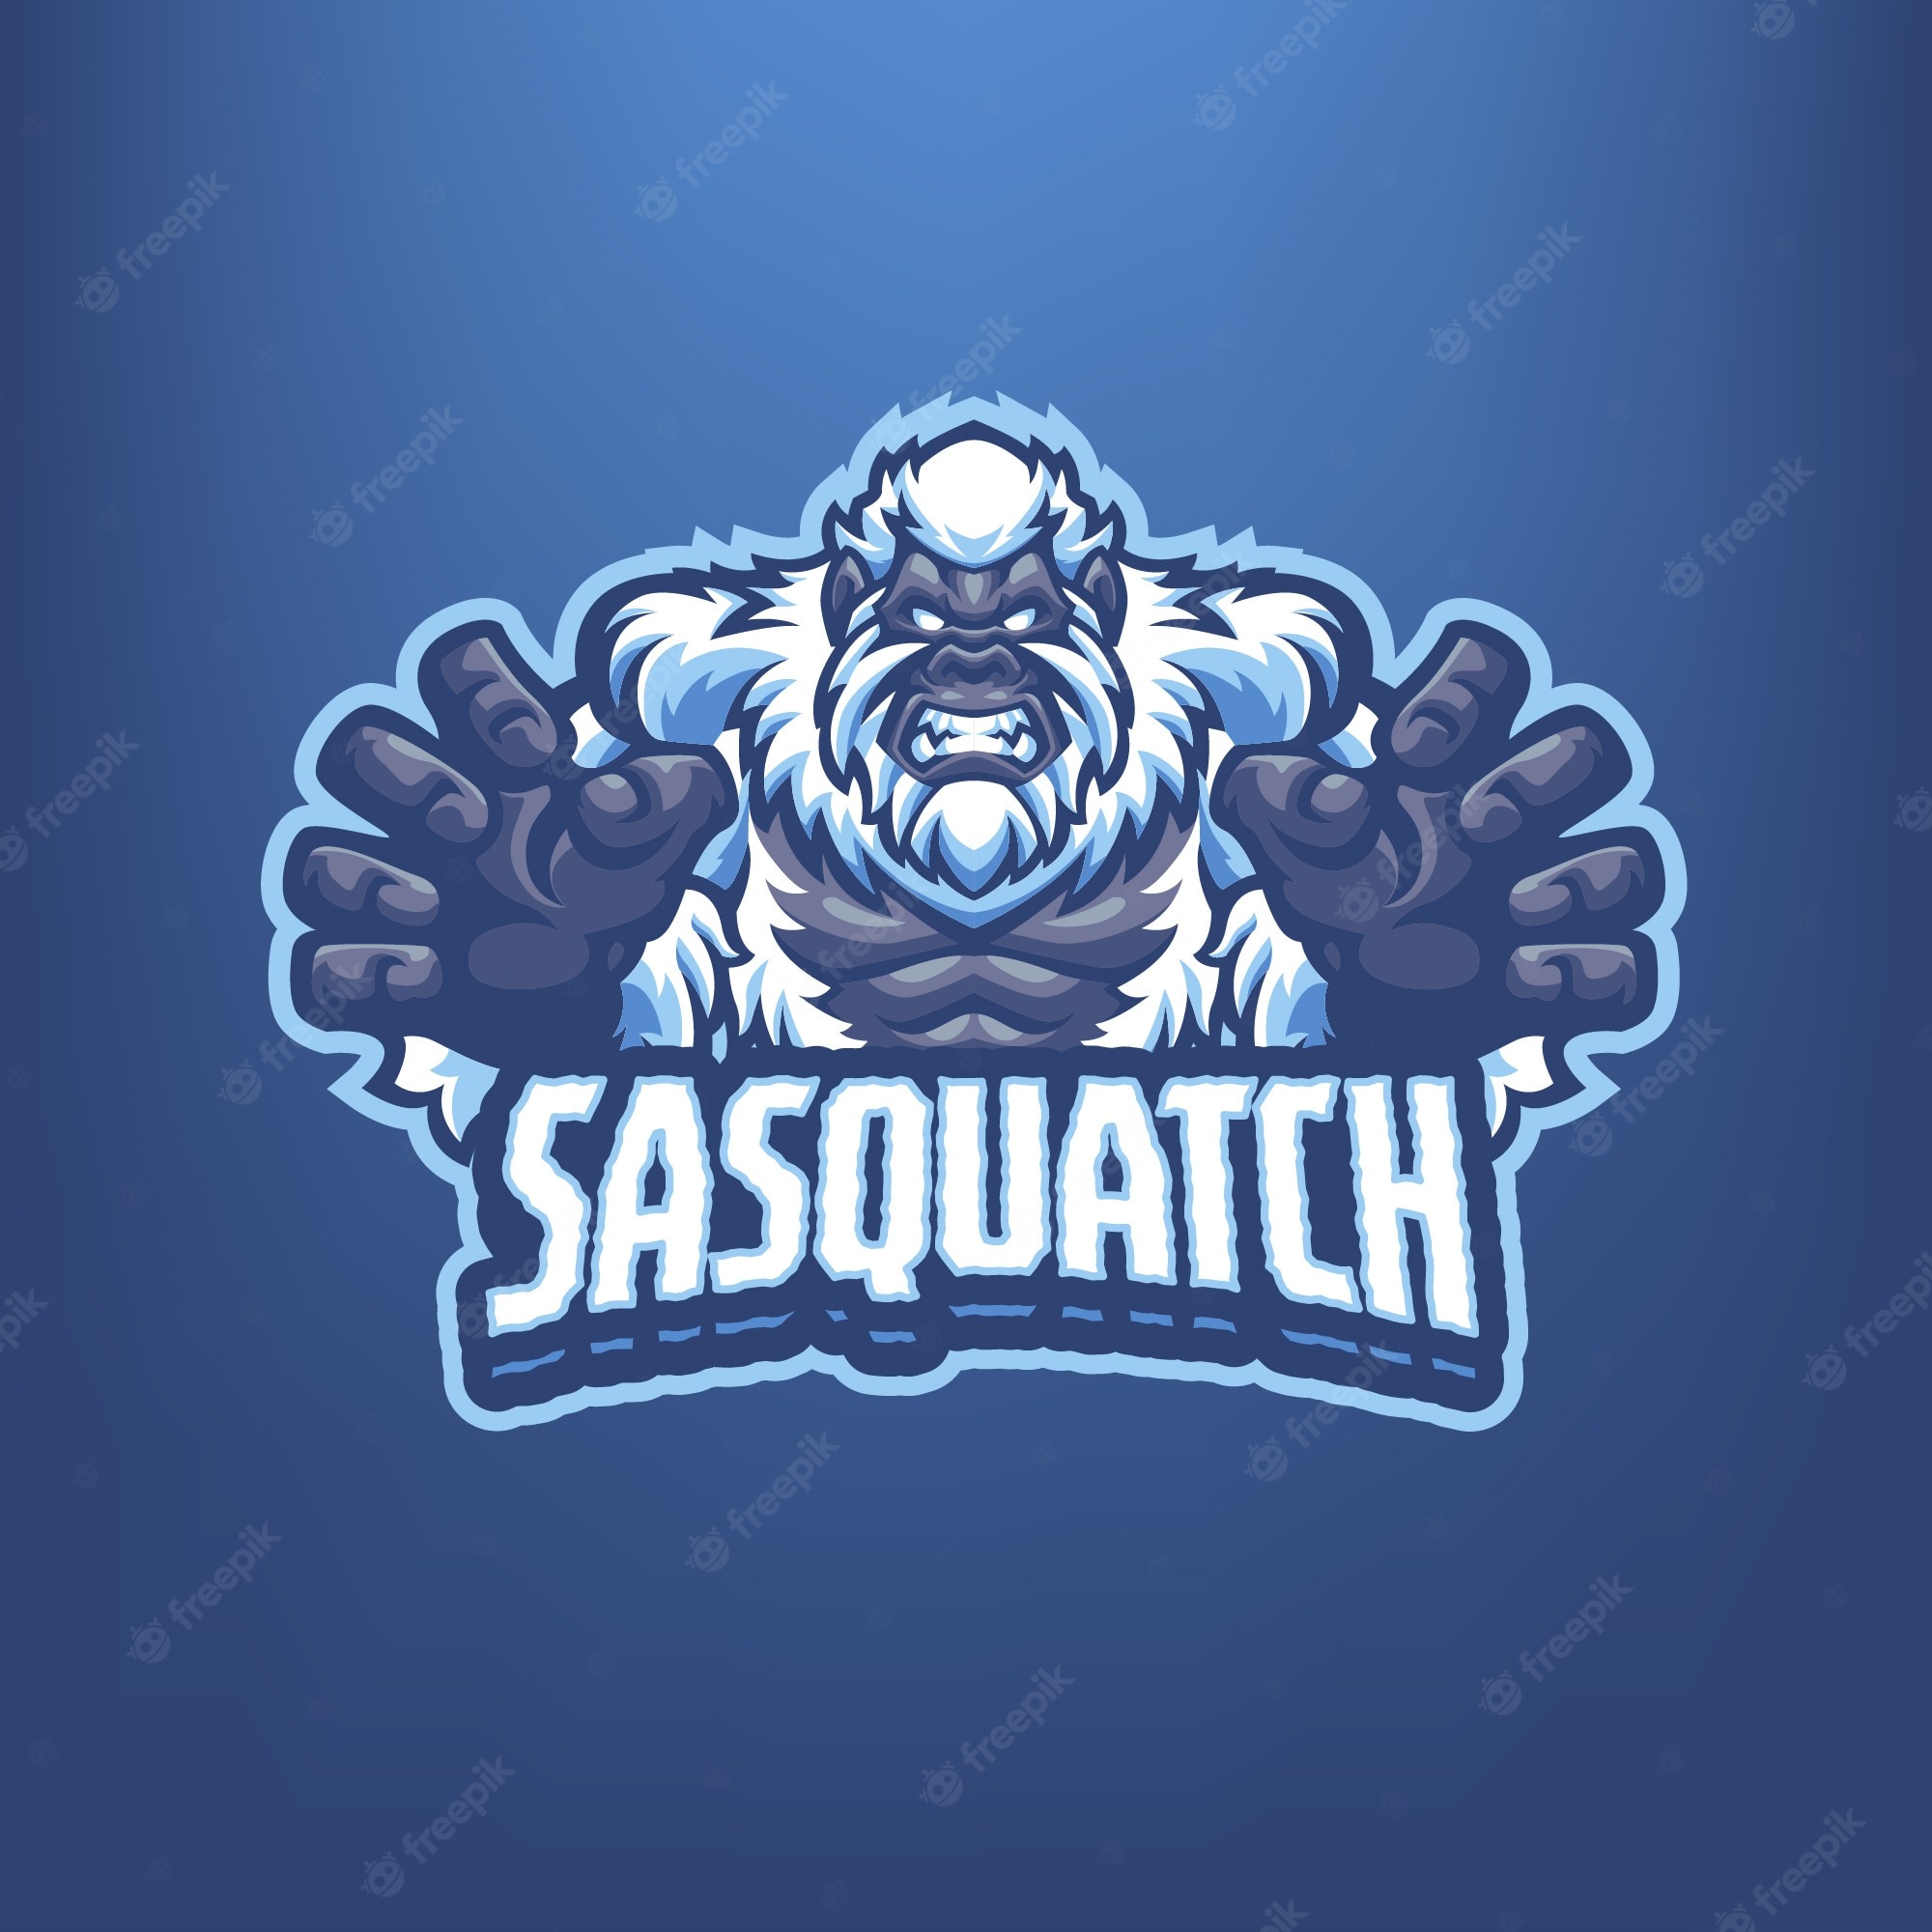 Mascot logo